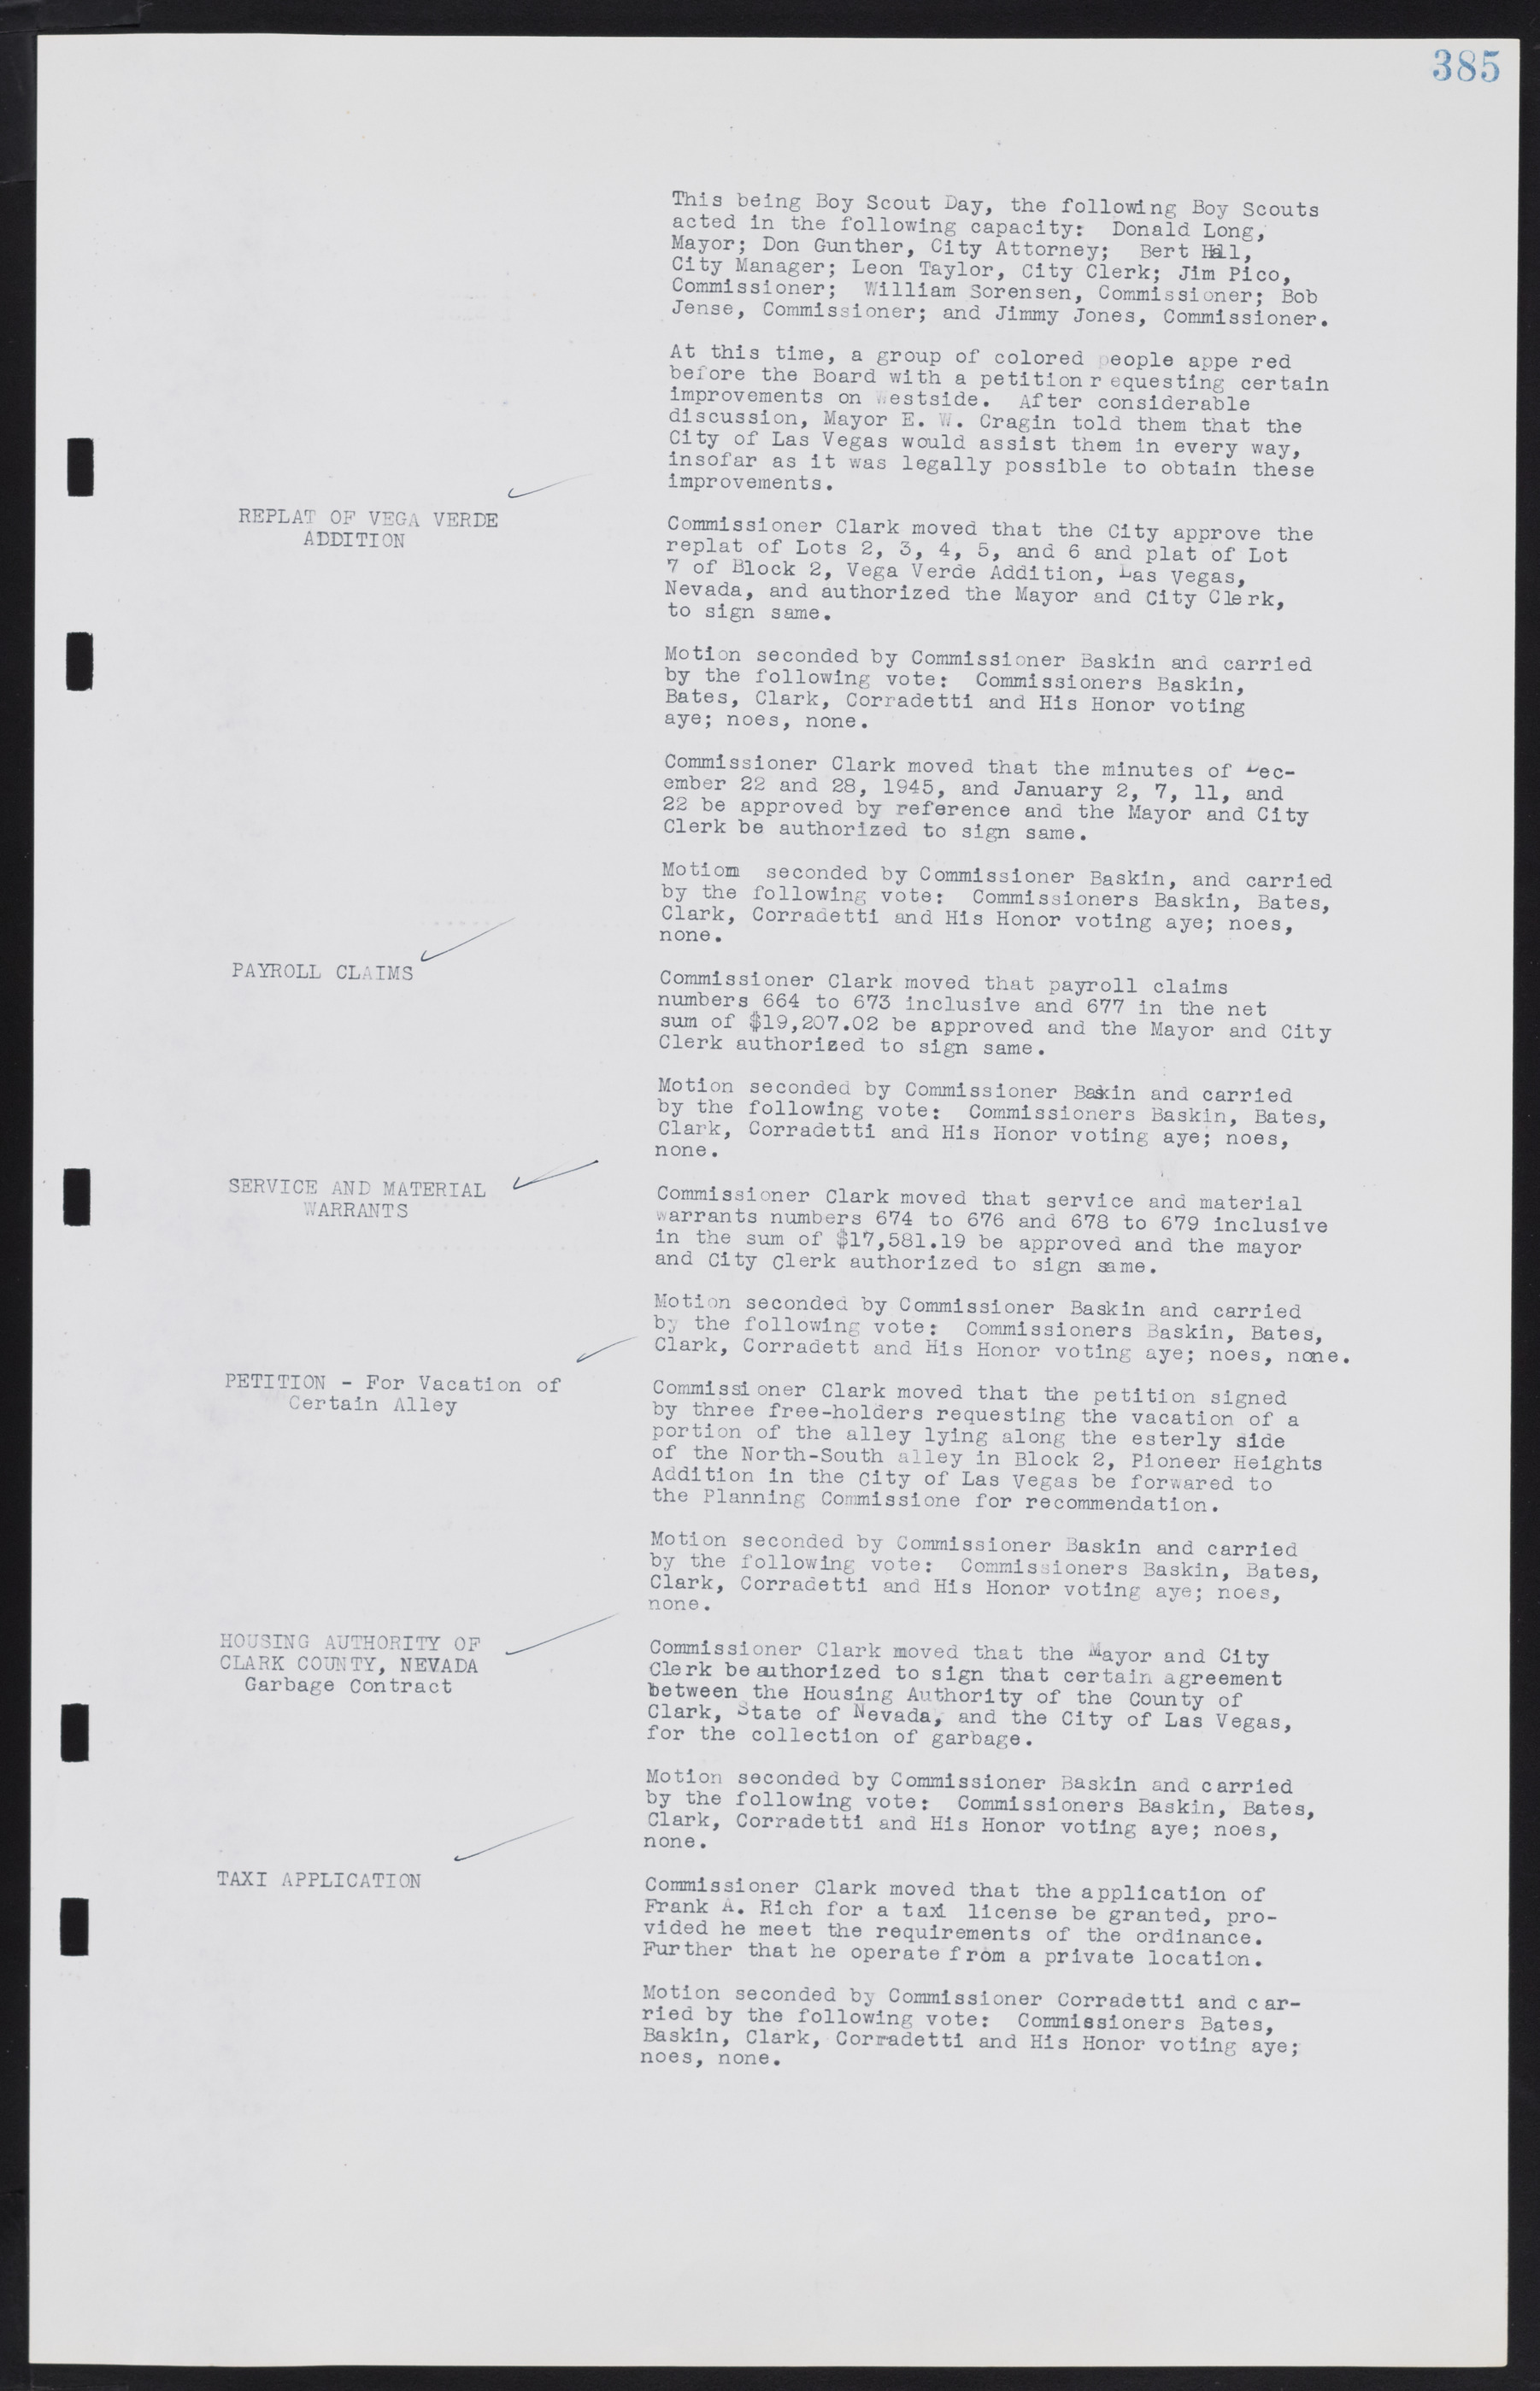 Las Vegas City Commission Minutes, August 11, 1942 to December 30, 1946, lvc000005-412